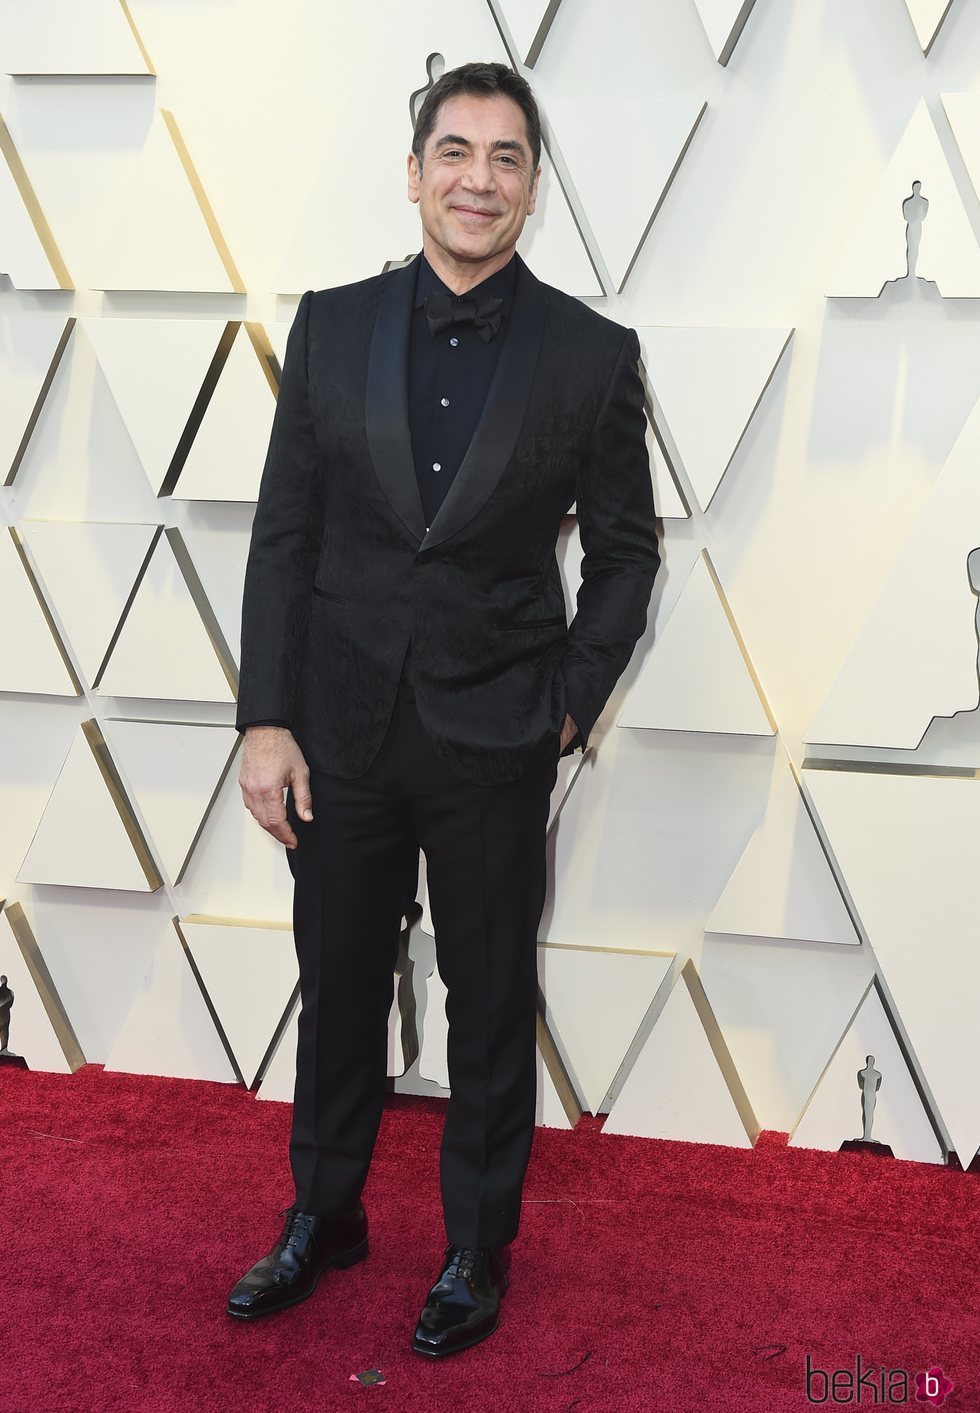 Javier Bardem en la alfombra roja de los Premios Oscar 2019